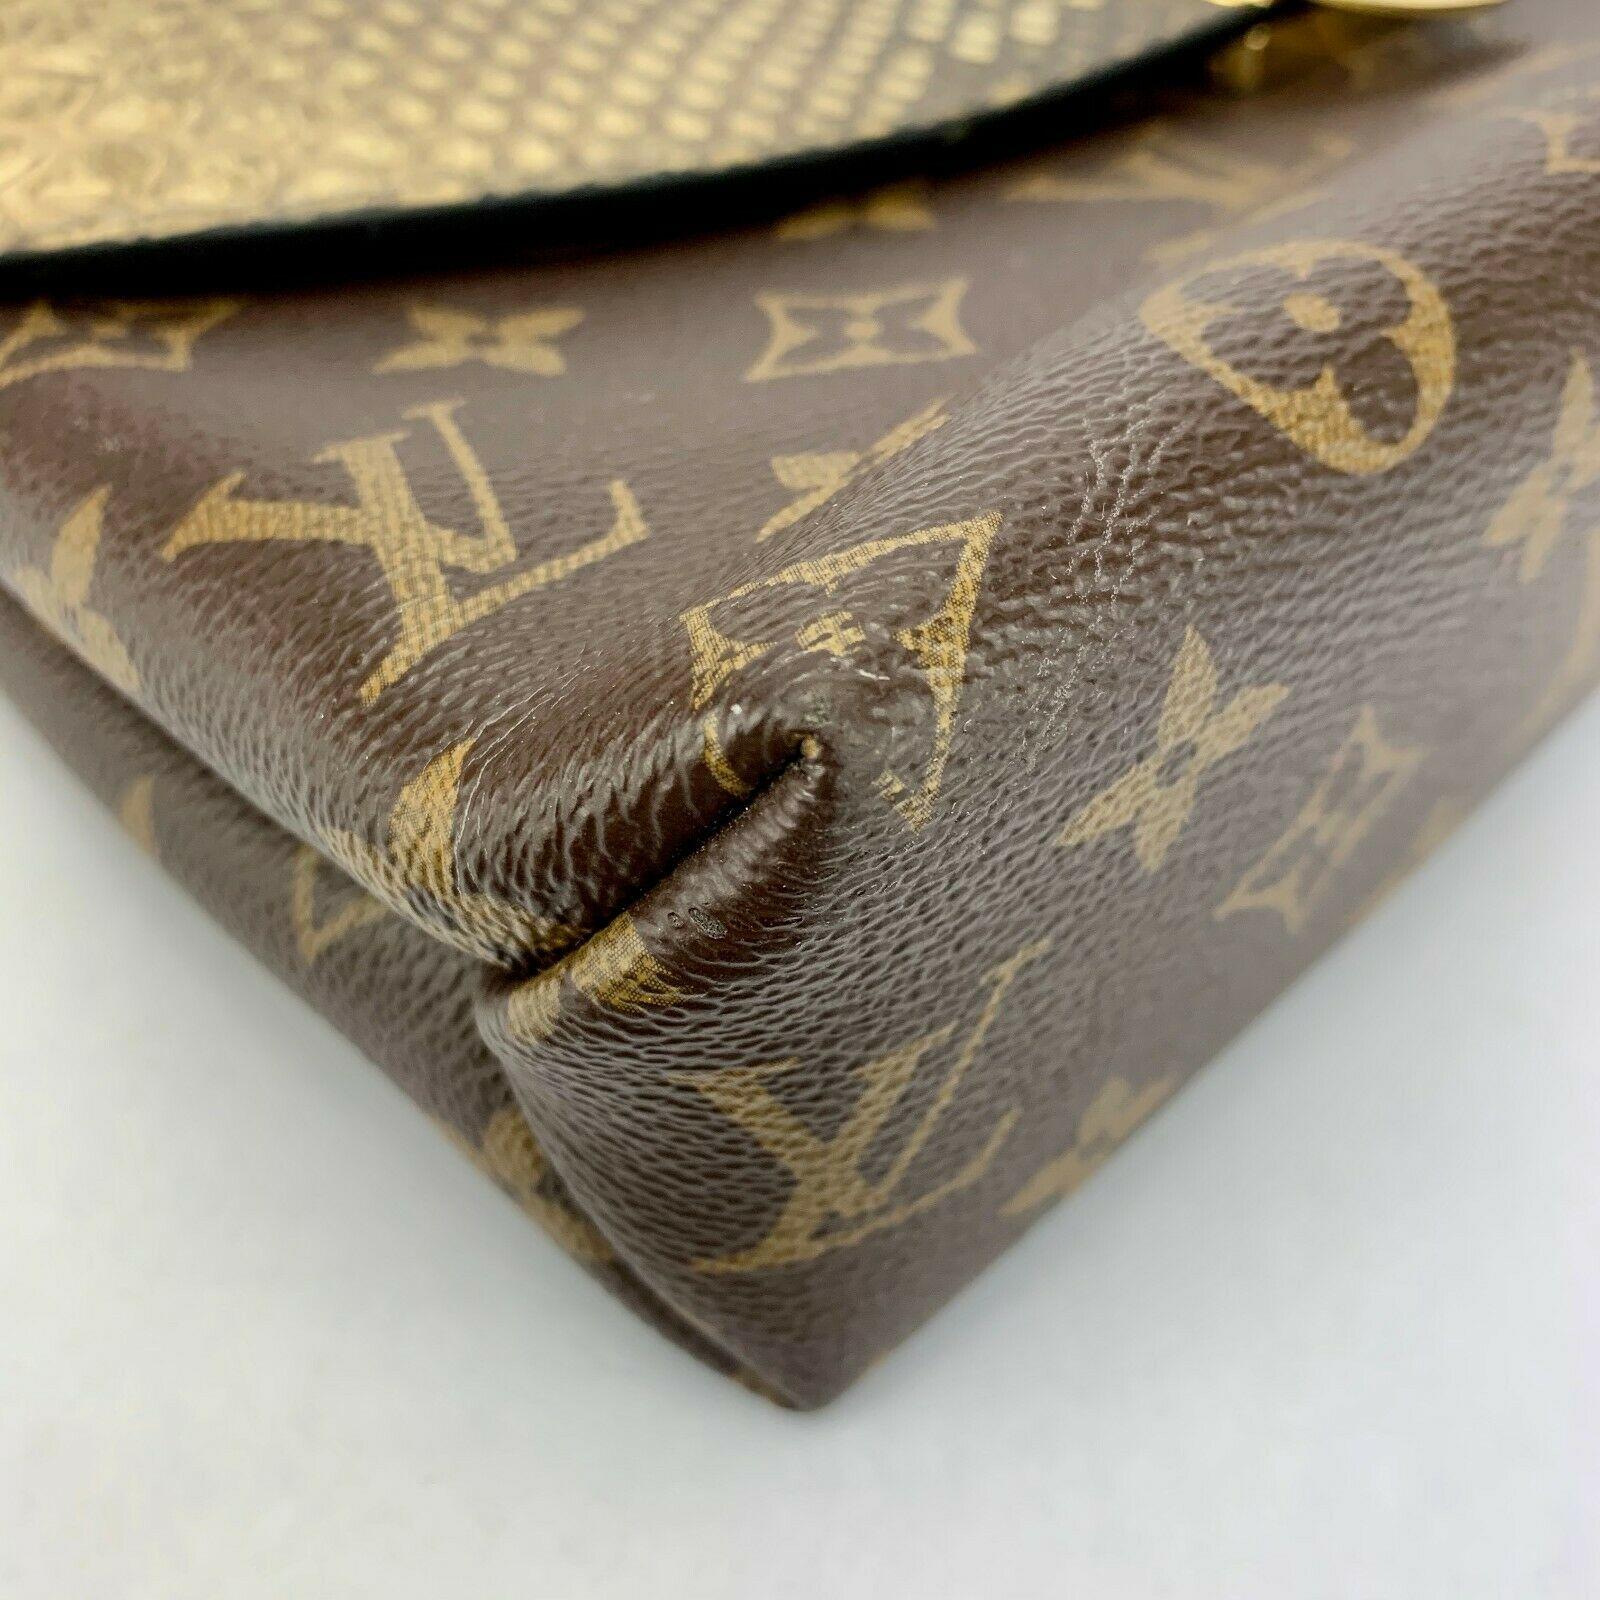 Brown Louis Vuitton Monogram Saint Placide Crossbody Bag